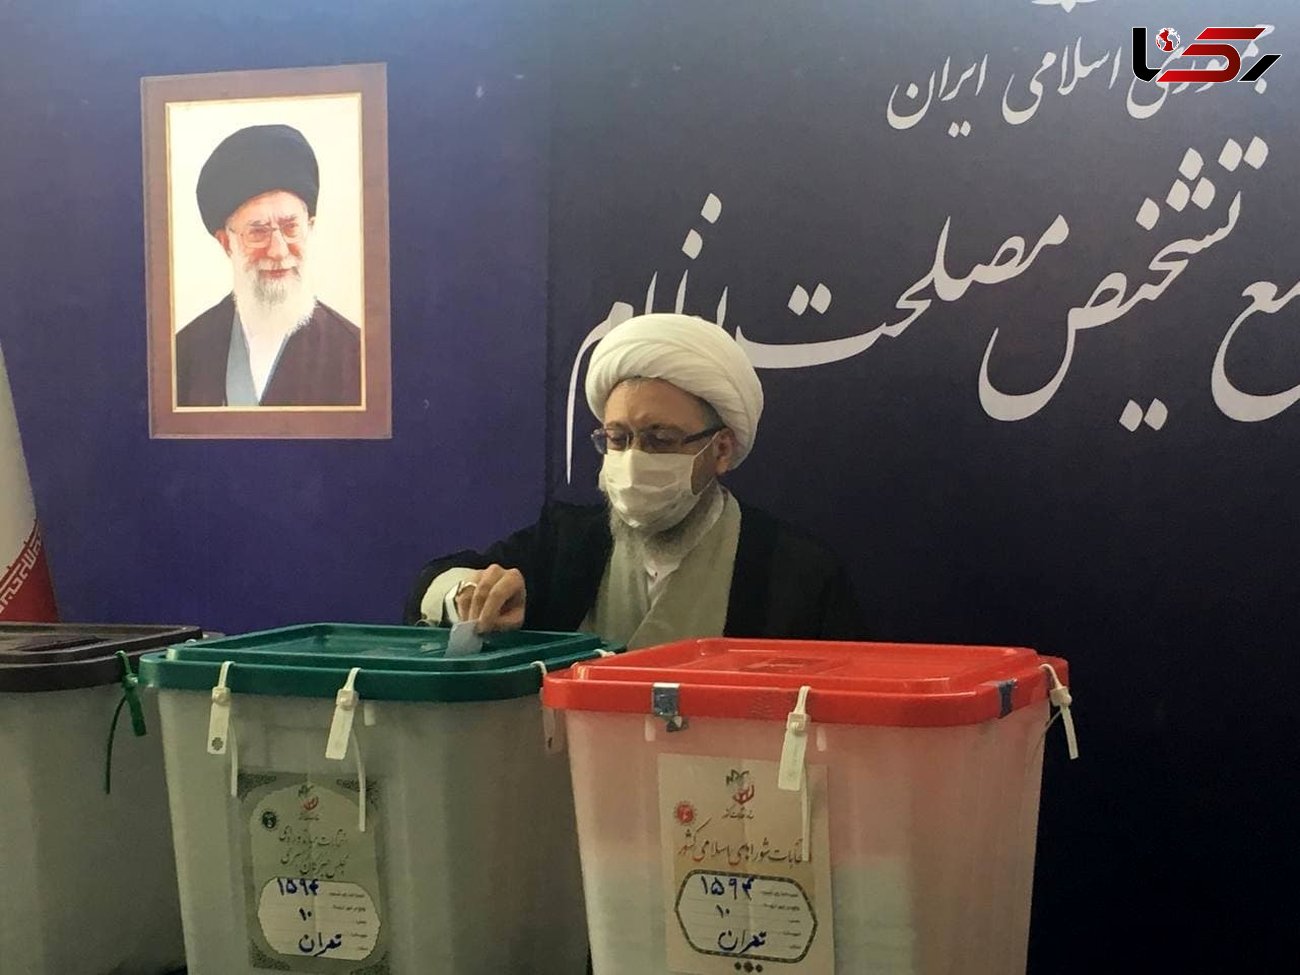  رییس مجمع تشخیص مصلحت نظام آرای خود را به صندوق انداخت